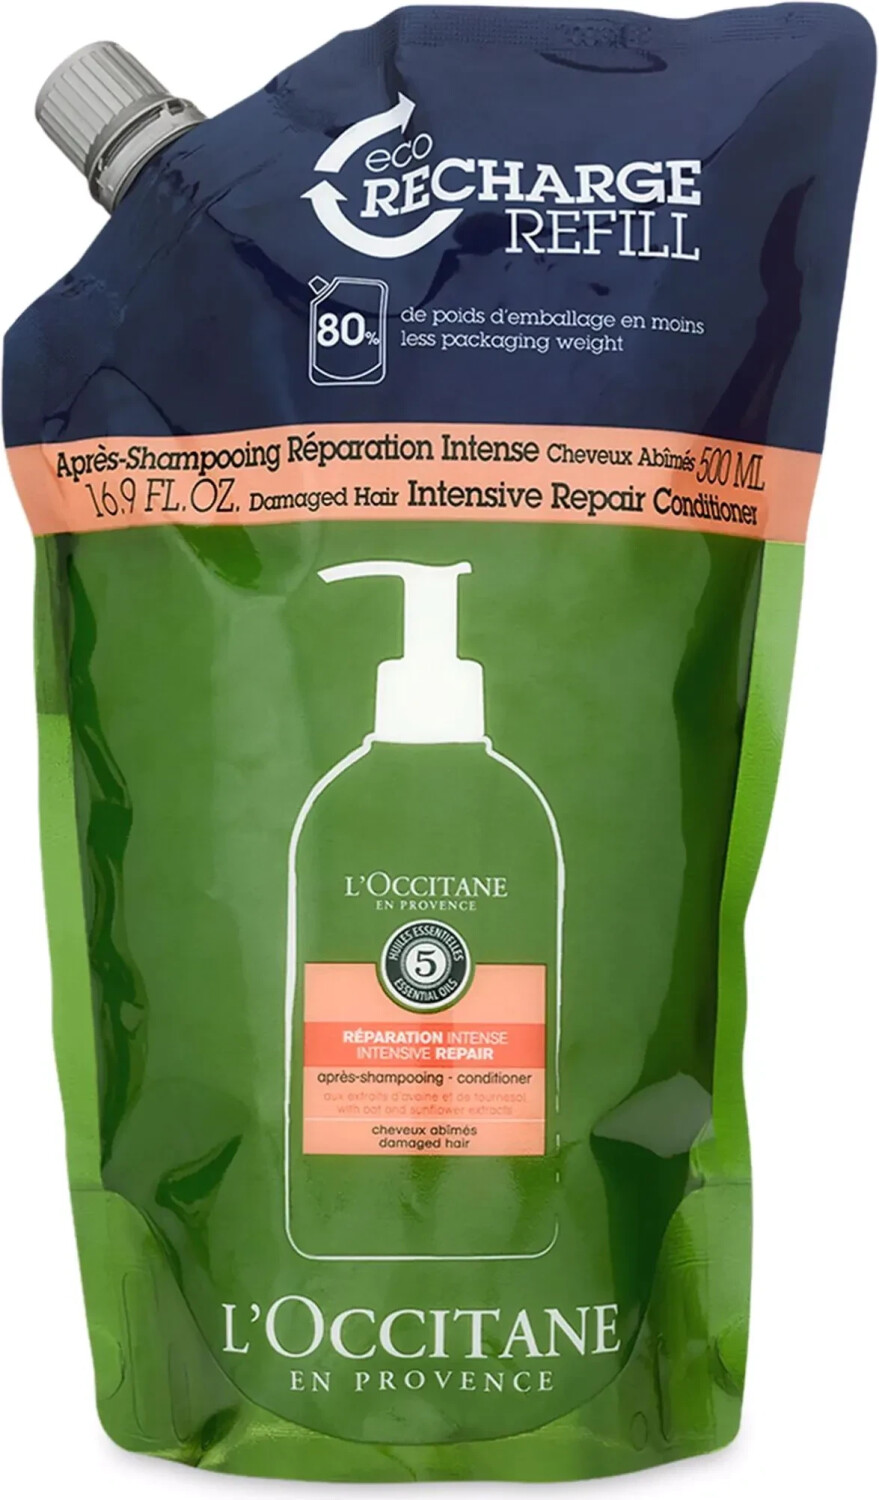 Photos - Hair Product LOccitane L'Occitane L'Occitane Aromachologie Intensive Repair Conditioner Refill (5 